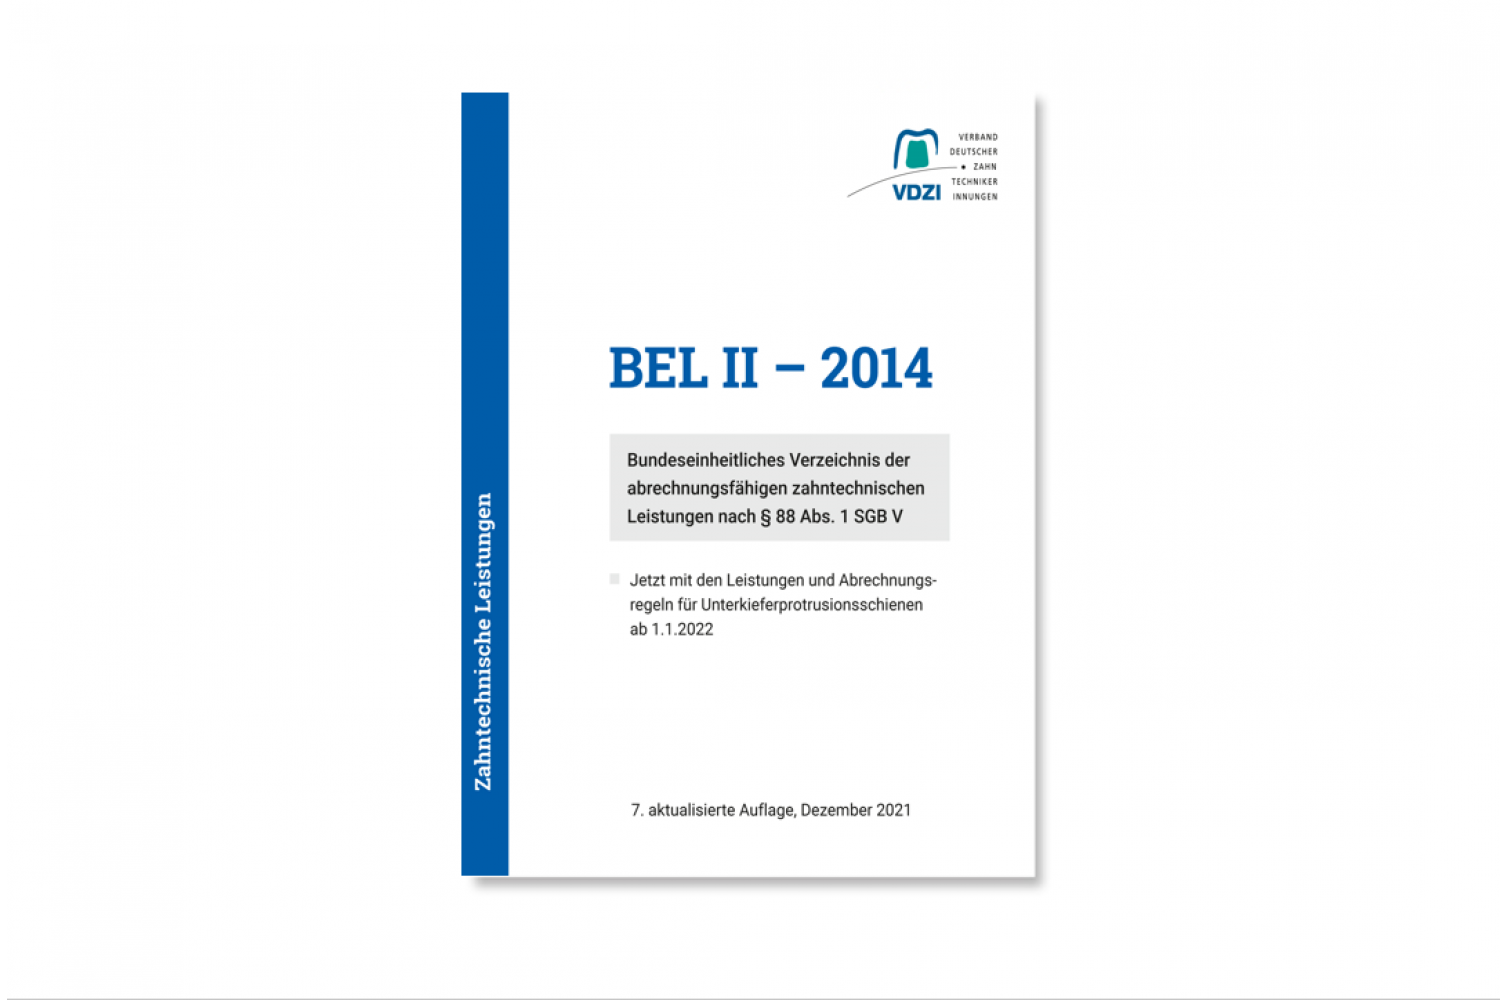 BEL II - 2014 Taschenbuch